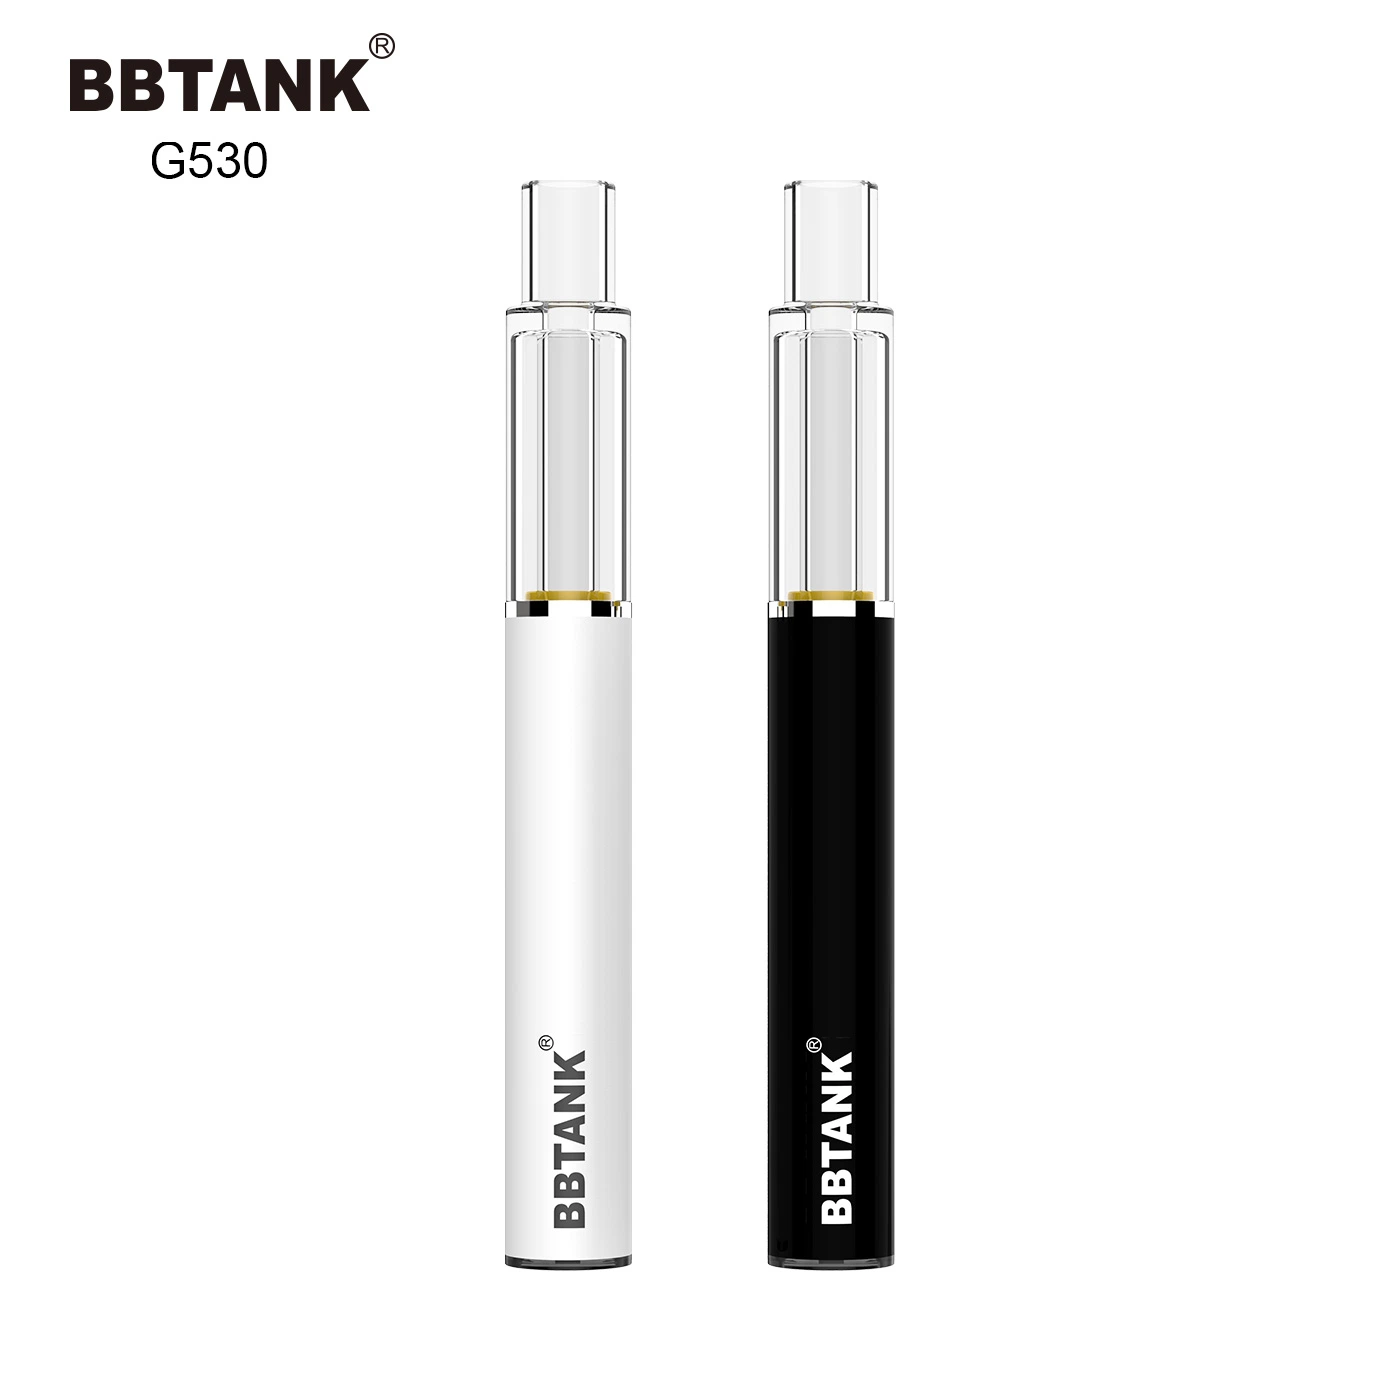 Bbtank All Glass Vaporizer 510 Thread Cartridge Thick Oil Vape Pen